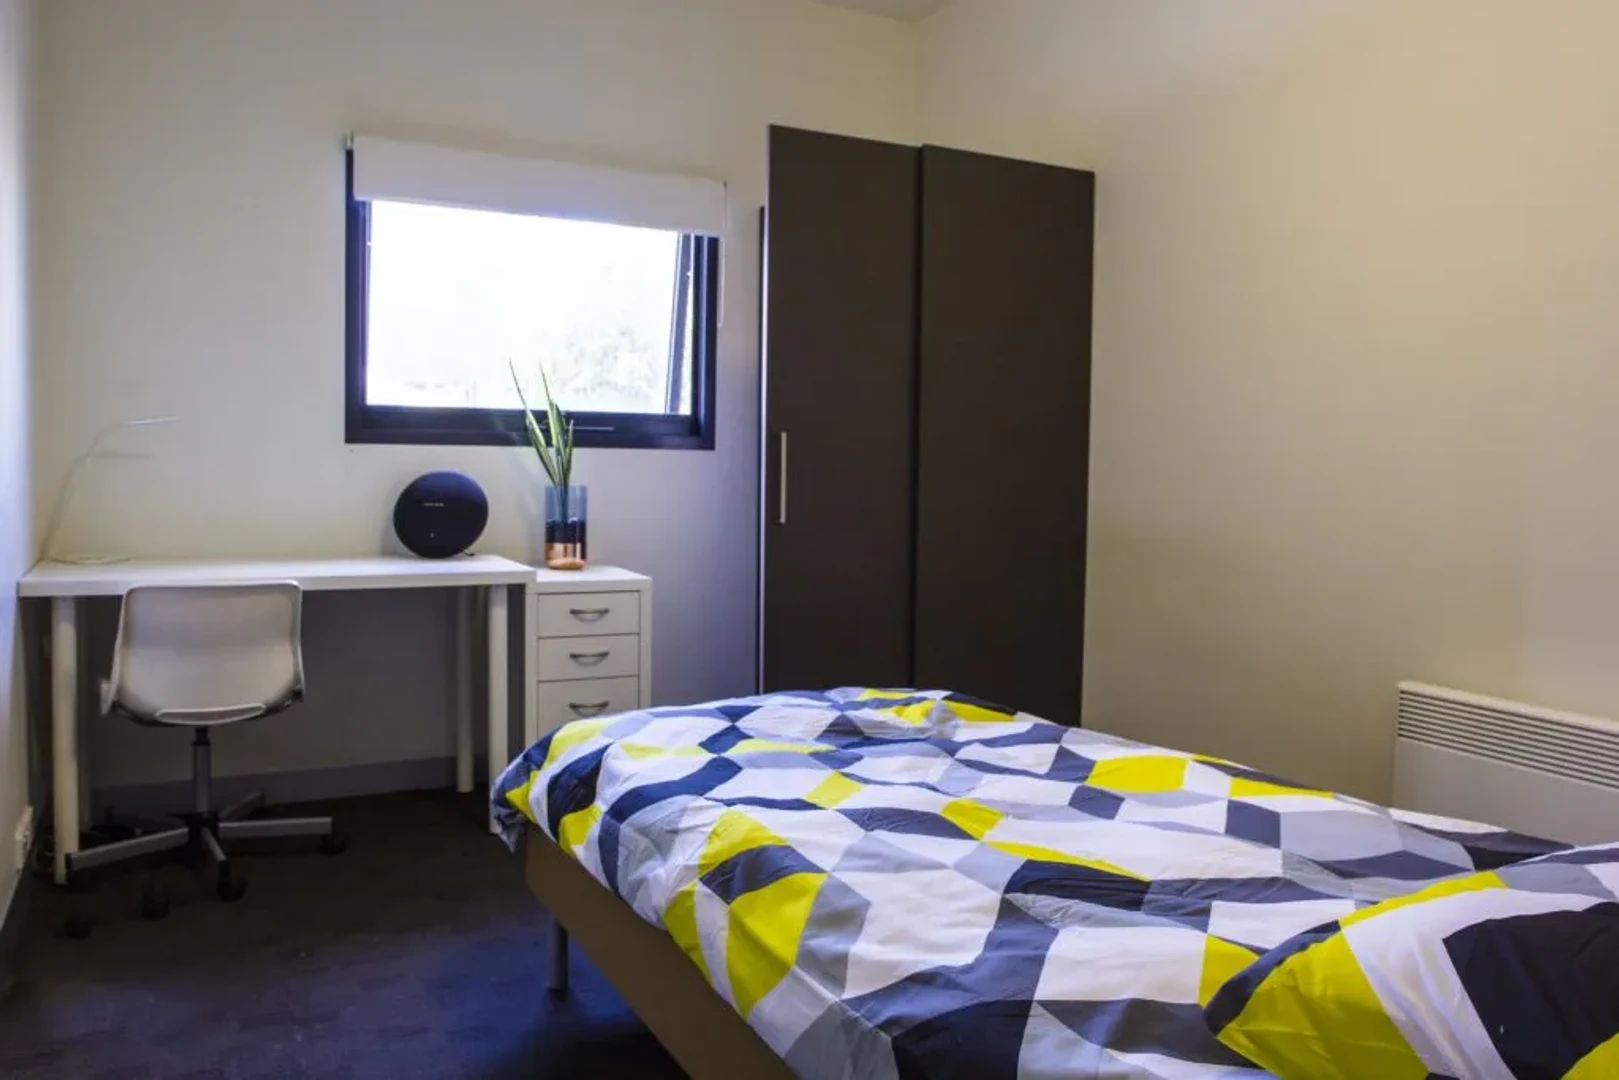 Pokój wspólny w mieszkaniu 3-pokojowym Melbourne